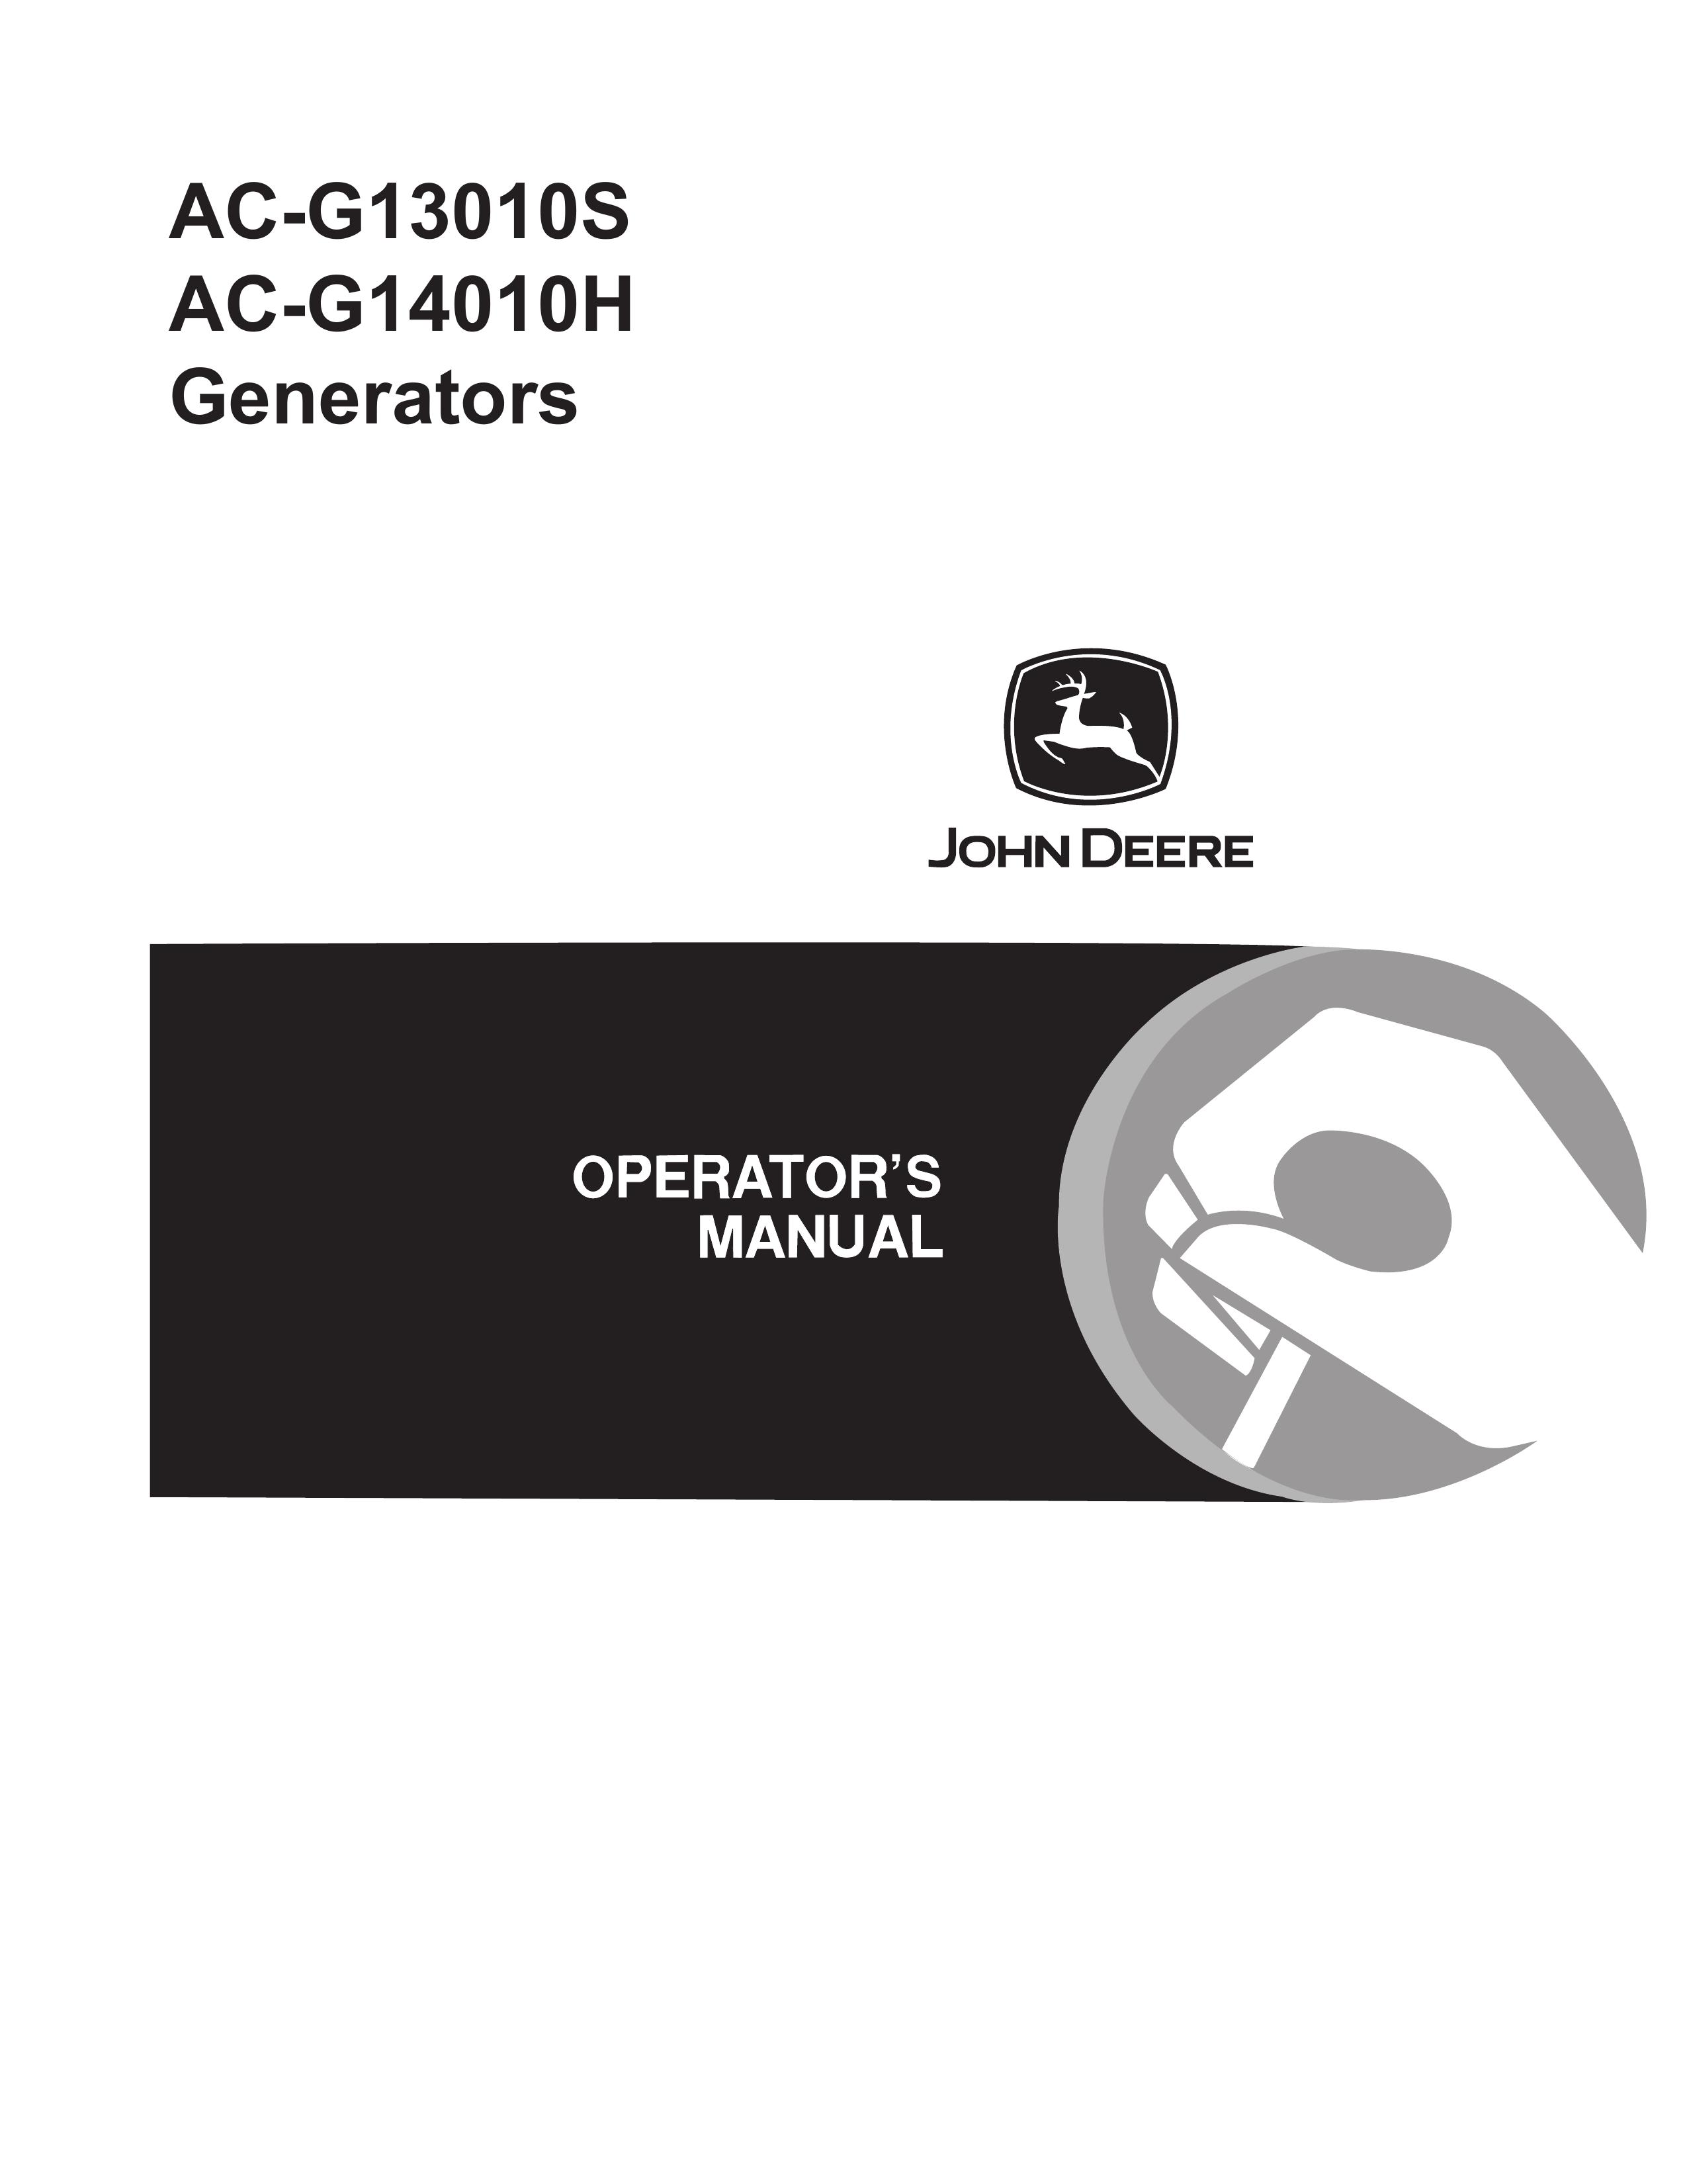 John Deere AC-G14010H Portable Generator User Manual